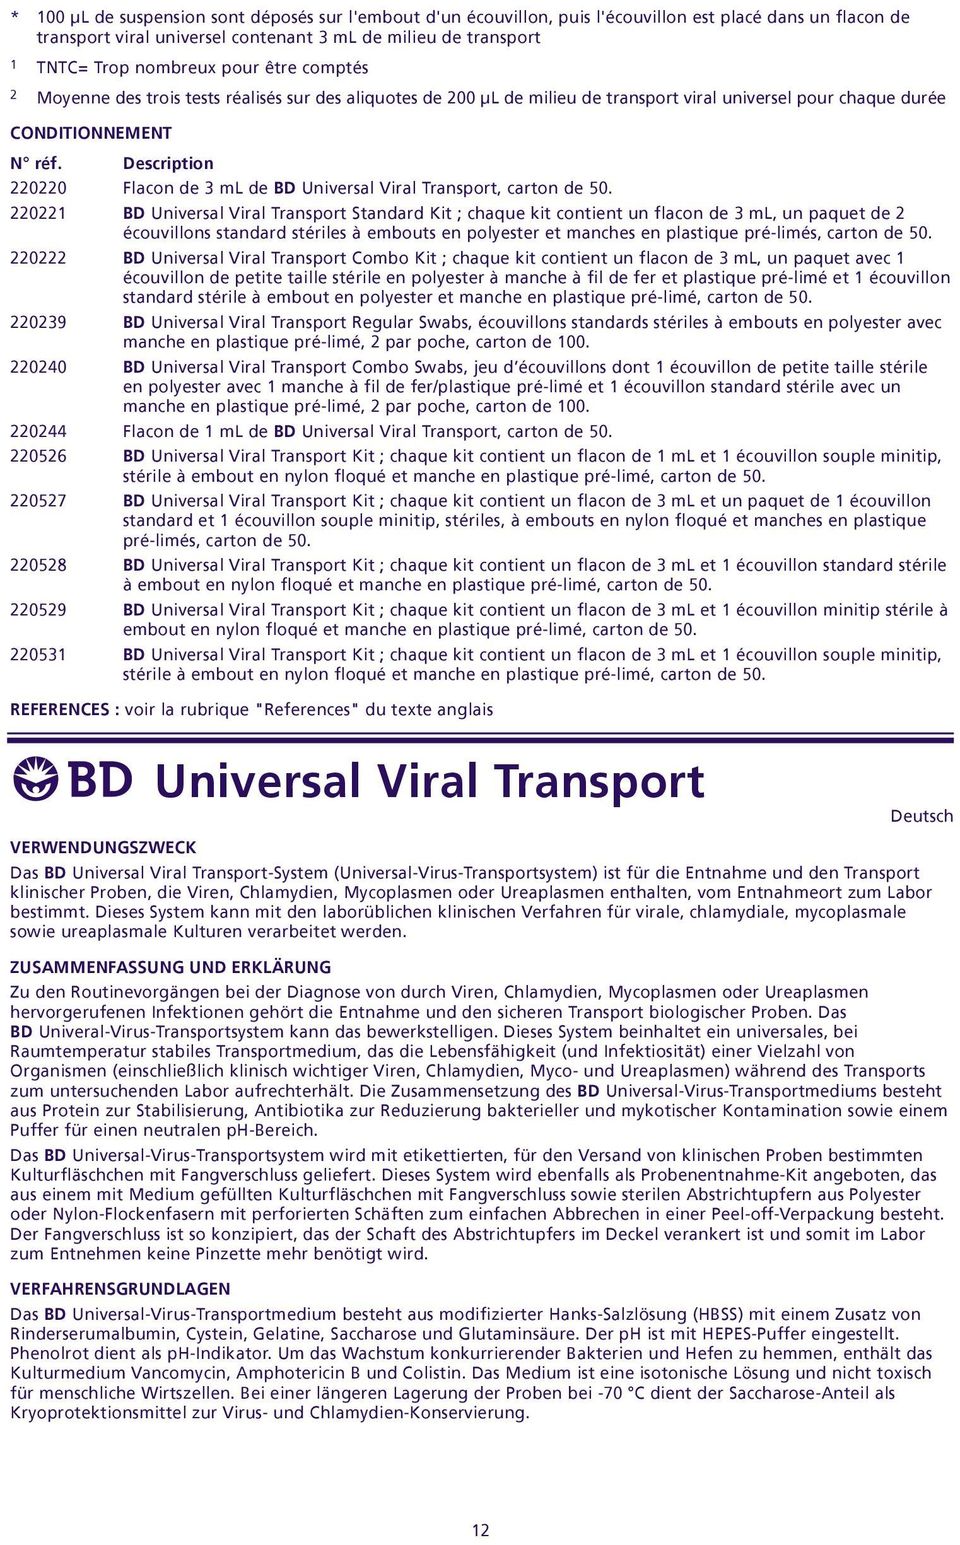 Description 220220 Flacon de 3 ml de BD Universal Viral Transport, carton de 50.